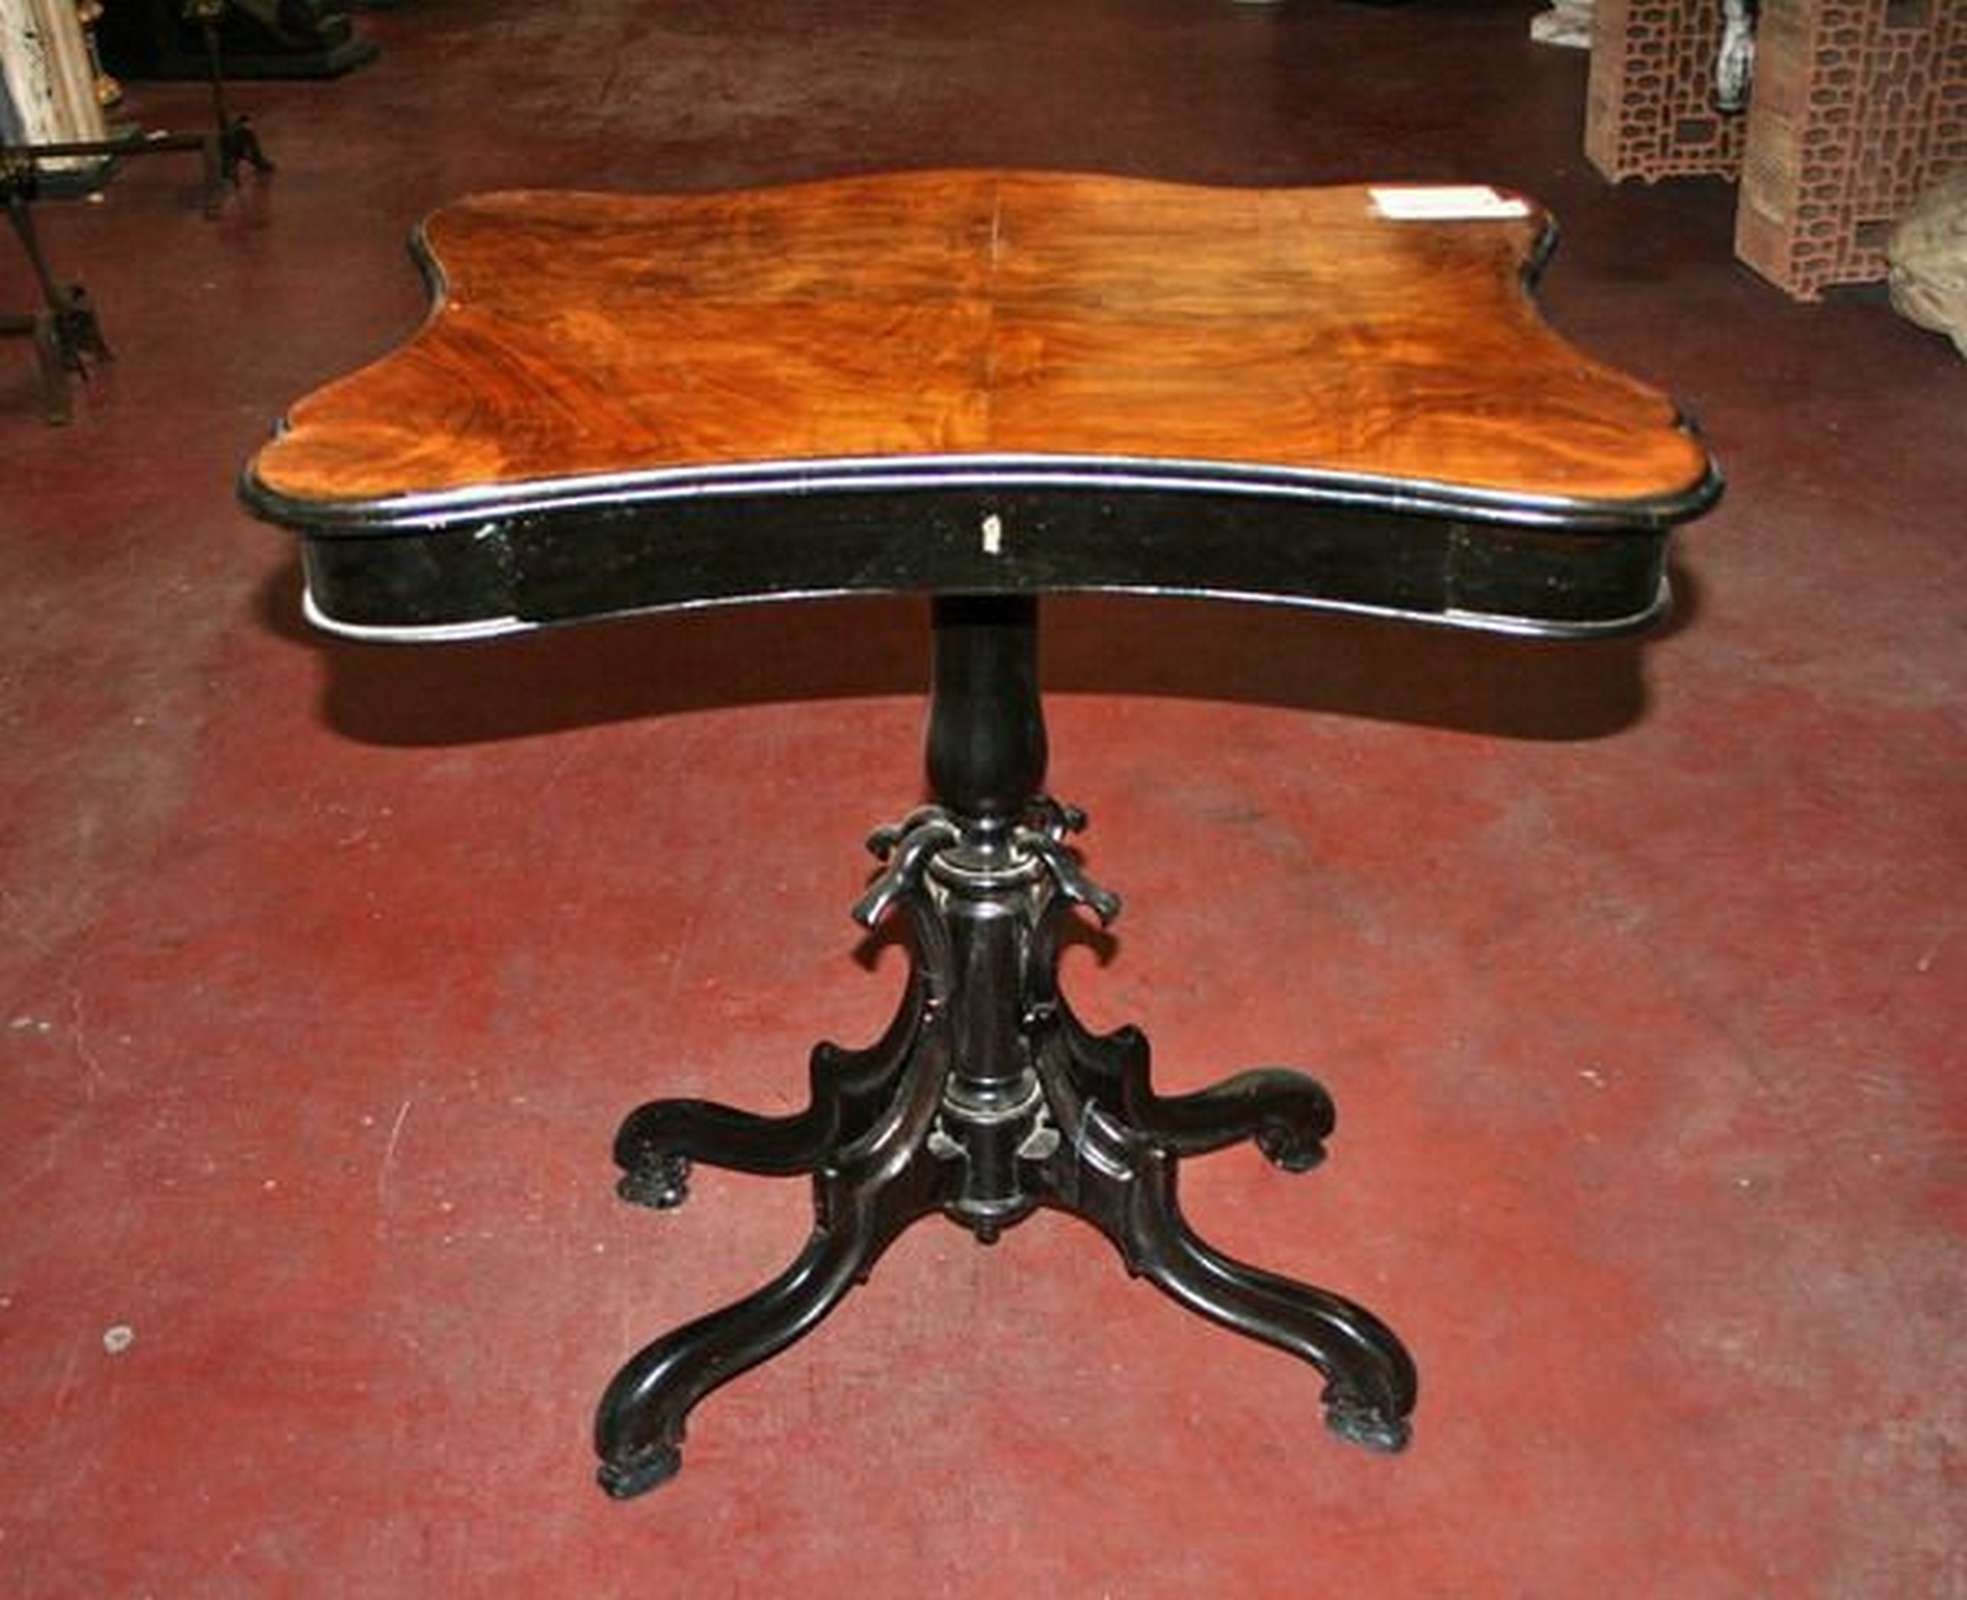 Antico tavolino in legno. Epoca 1800. - Tavoli in legno - Tavoli e complementi - Prodotti - Antichità Fiorillo